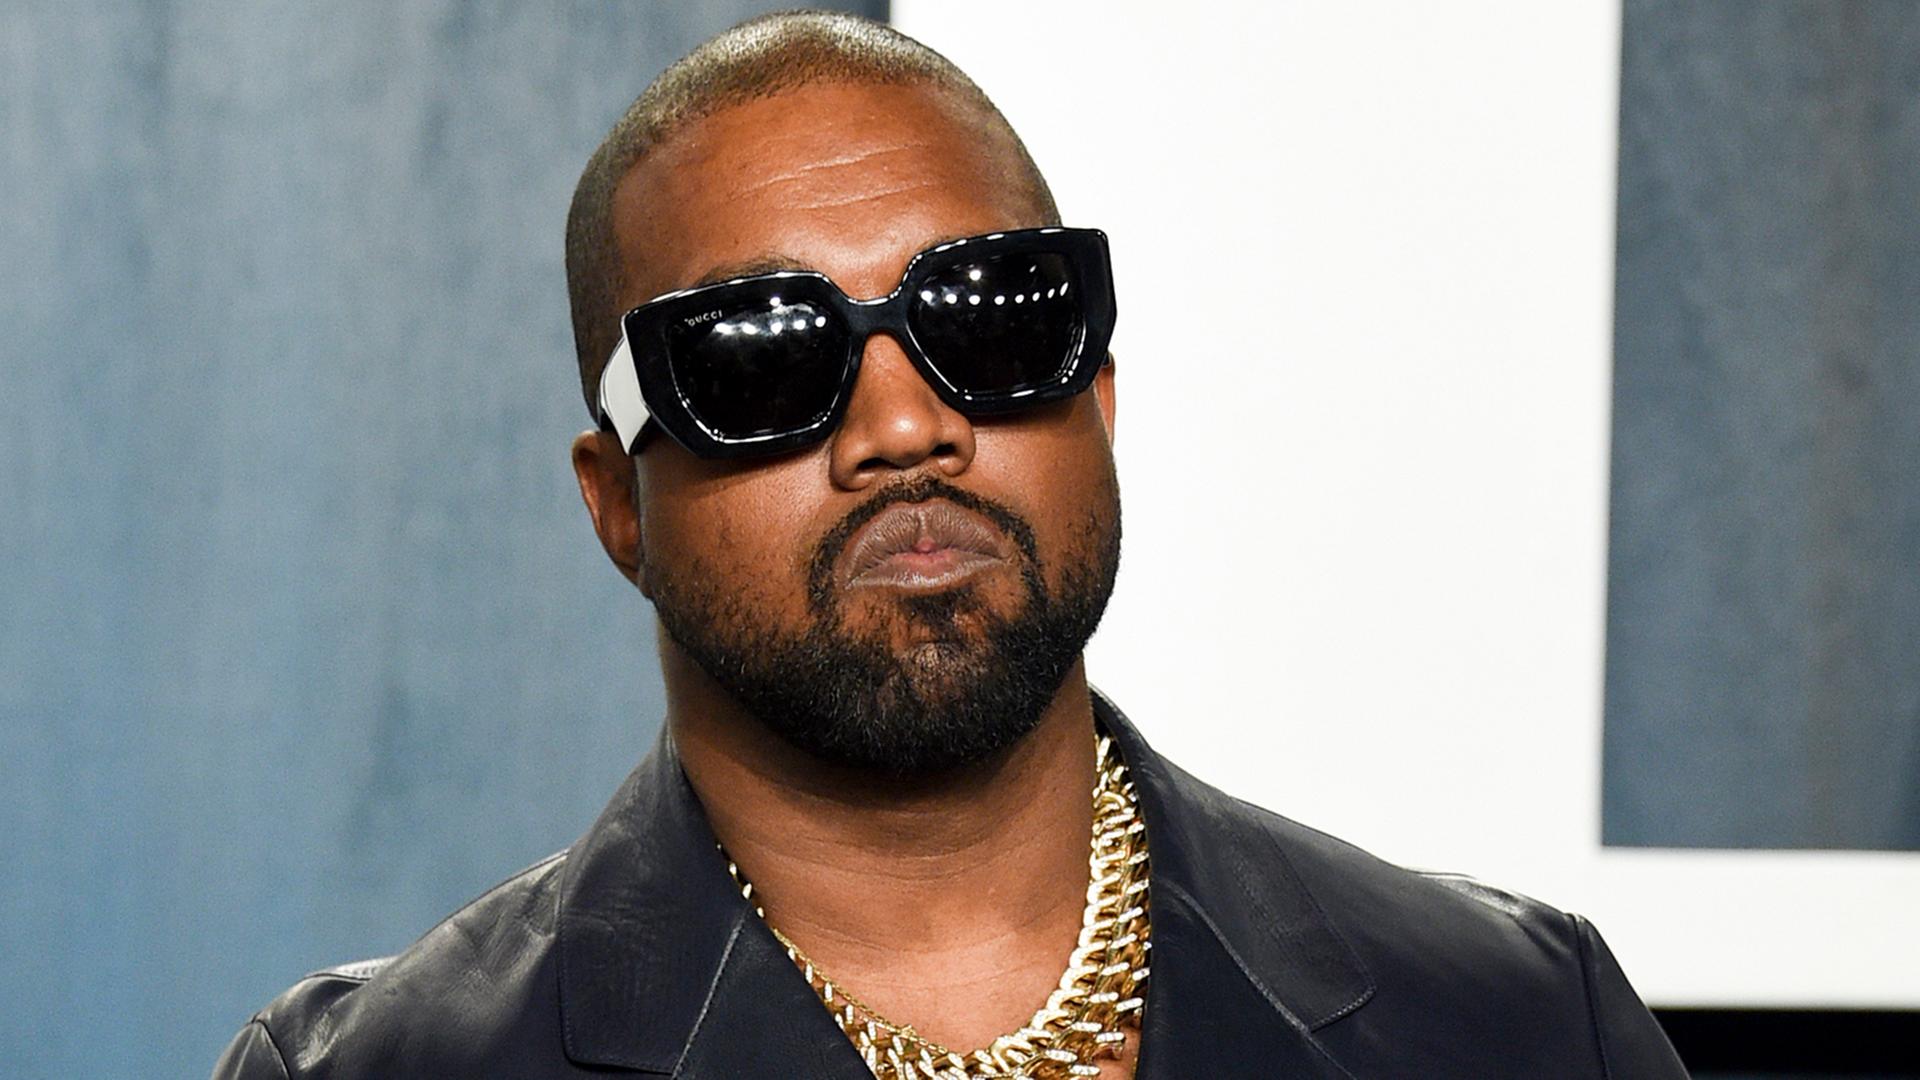 Kanye West posiert bei der Ankunft zur Vanity Fair Oscar Party in Beverly Hills, Kalifornien, für die Fotografen.